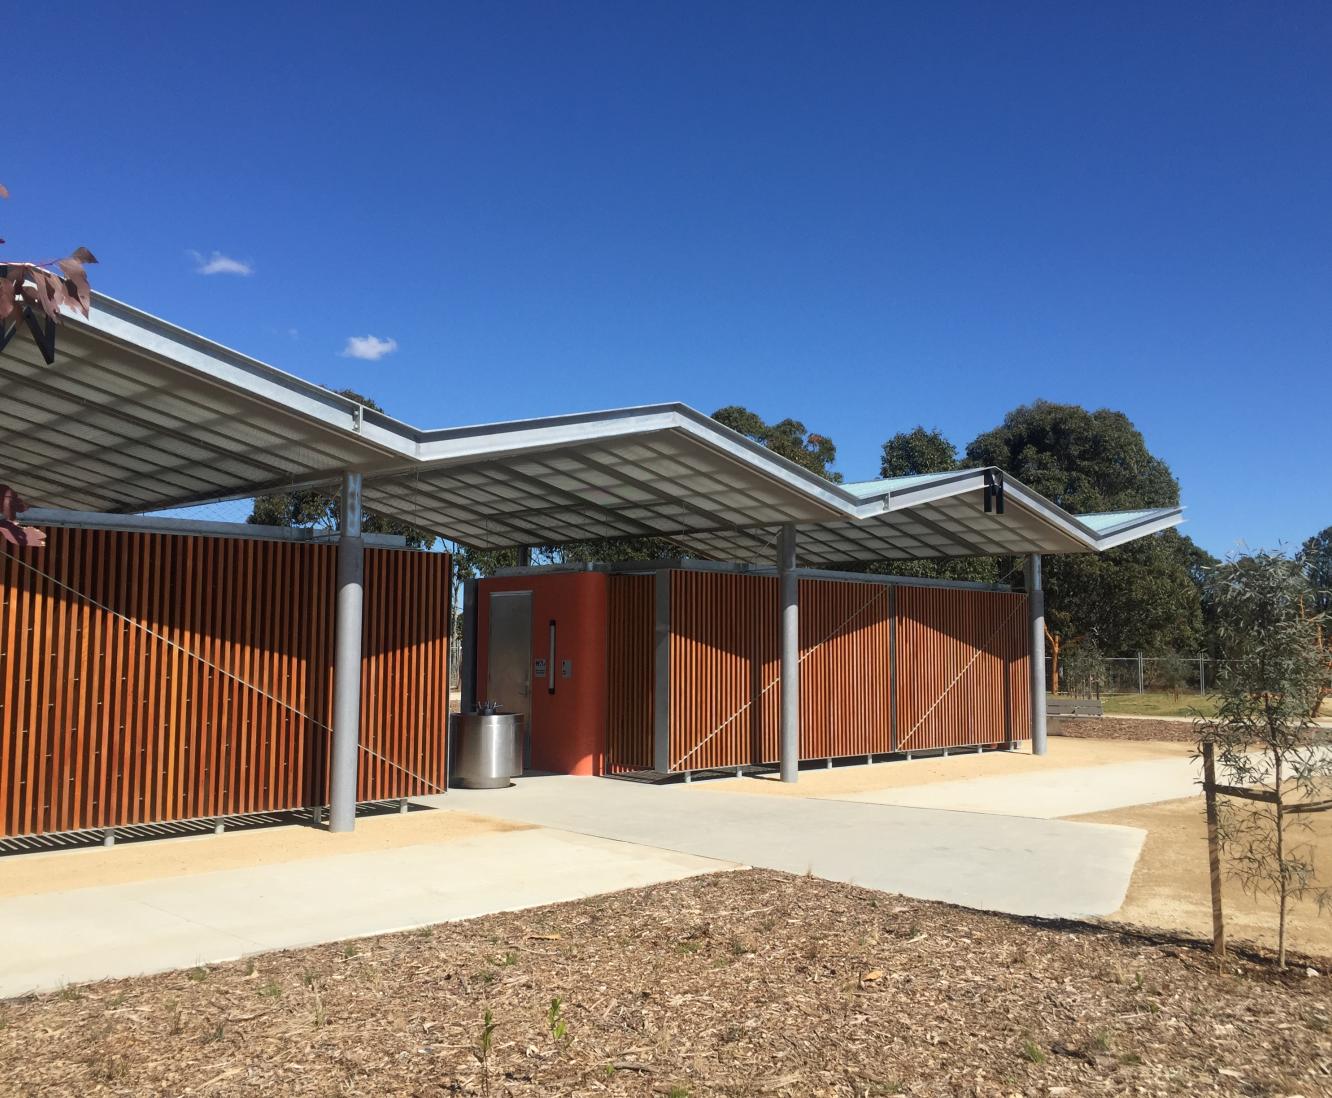 Western Sydney Parklands bathroom facilities